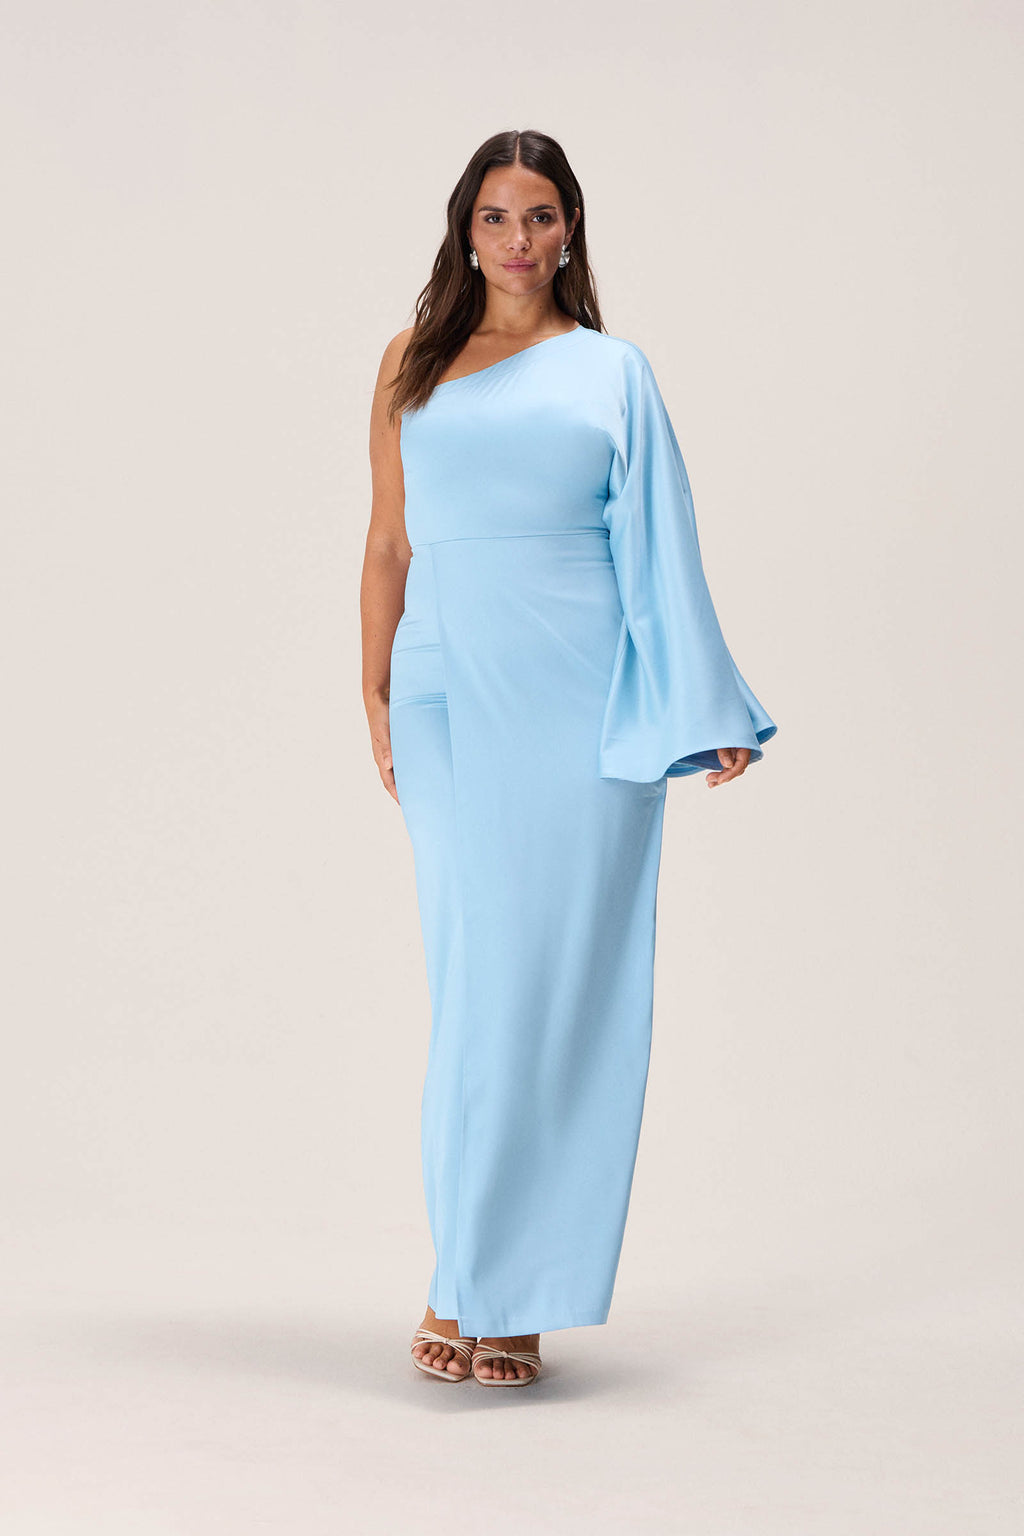 One-shoulder dress in light blue – Shop maxi dress – adoore.se